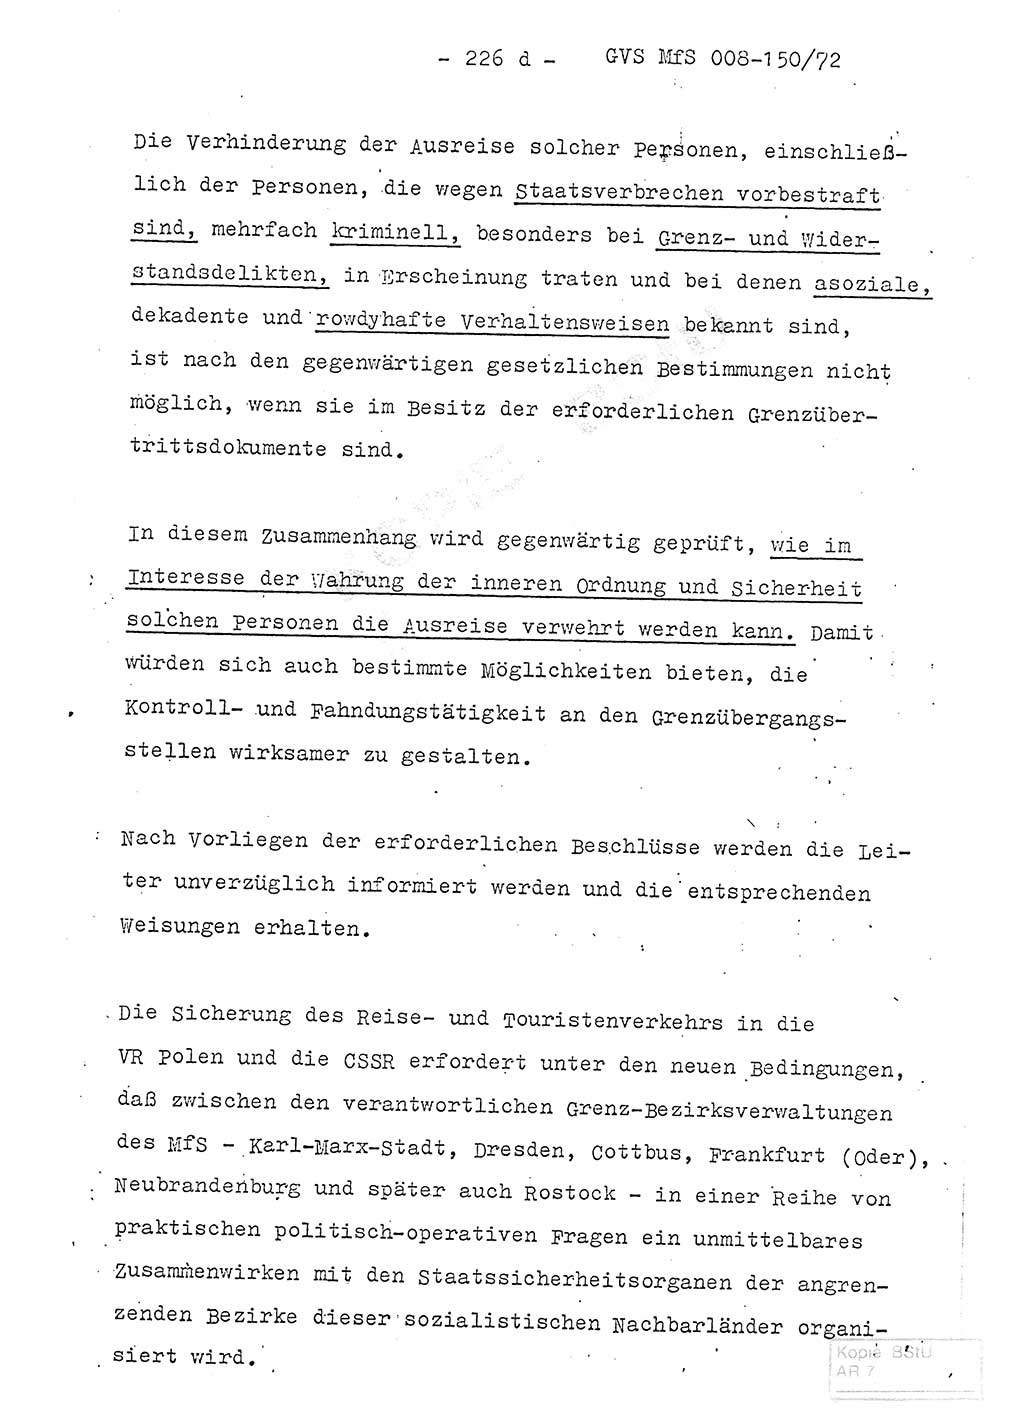 Referat (Entwurf) des Genossen Minister (Generaloberst Erich Mielke) auf der Dienstkonferenz 1972, Ministerium für Staatssicherheit (MfS) [Deutsche Demokratische Republik (DDR)], Der Minister, Geheime Verschlußsache (GVS) 008-150/72, Berlin 25.2.1972, Seite 226/4 (Ref. Entw. DK MfS DDR Min. GVS 008-150/72 1972, S. 226/4)